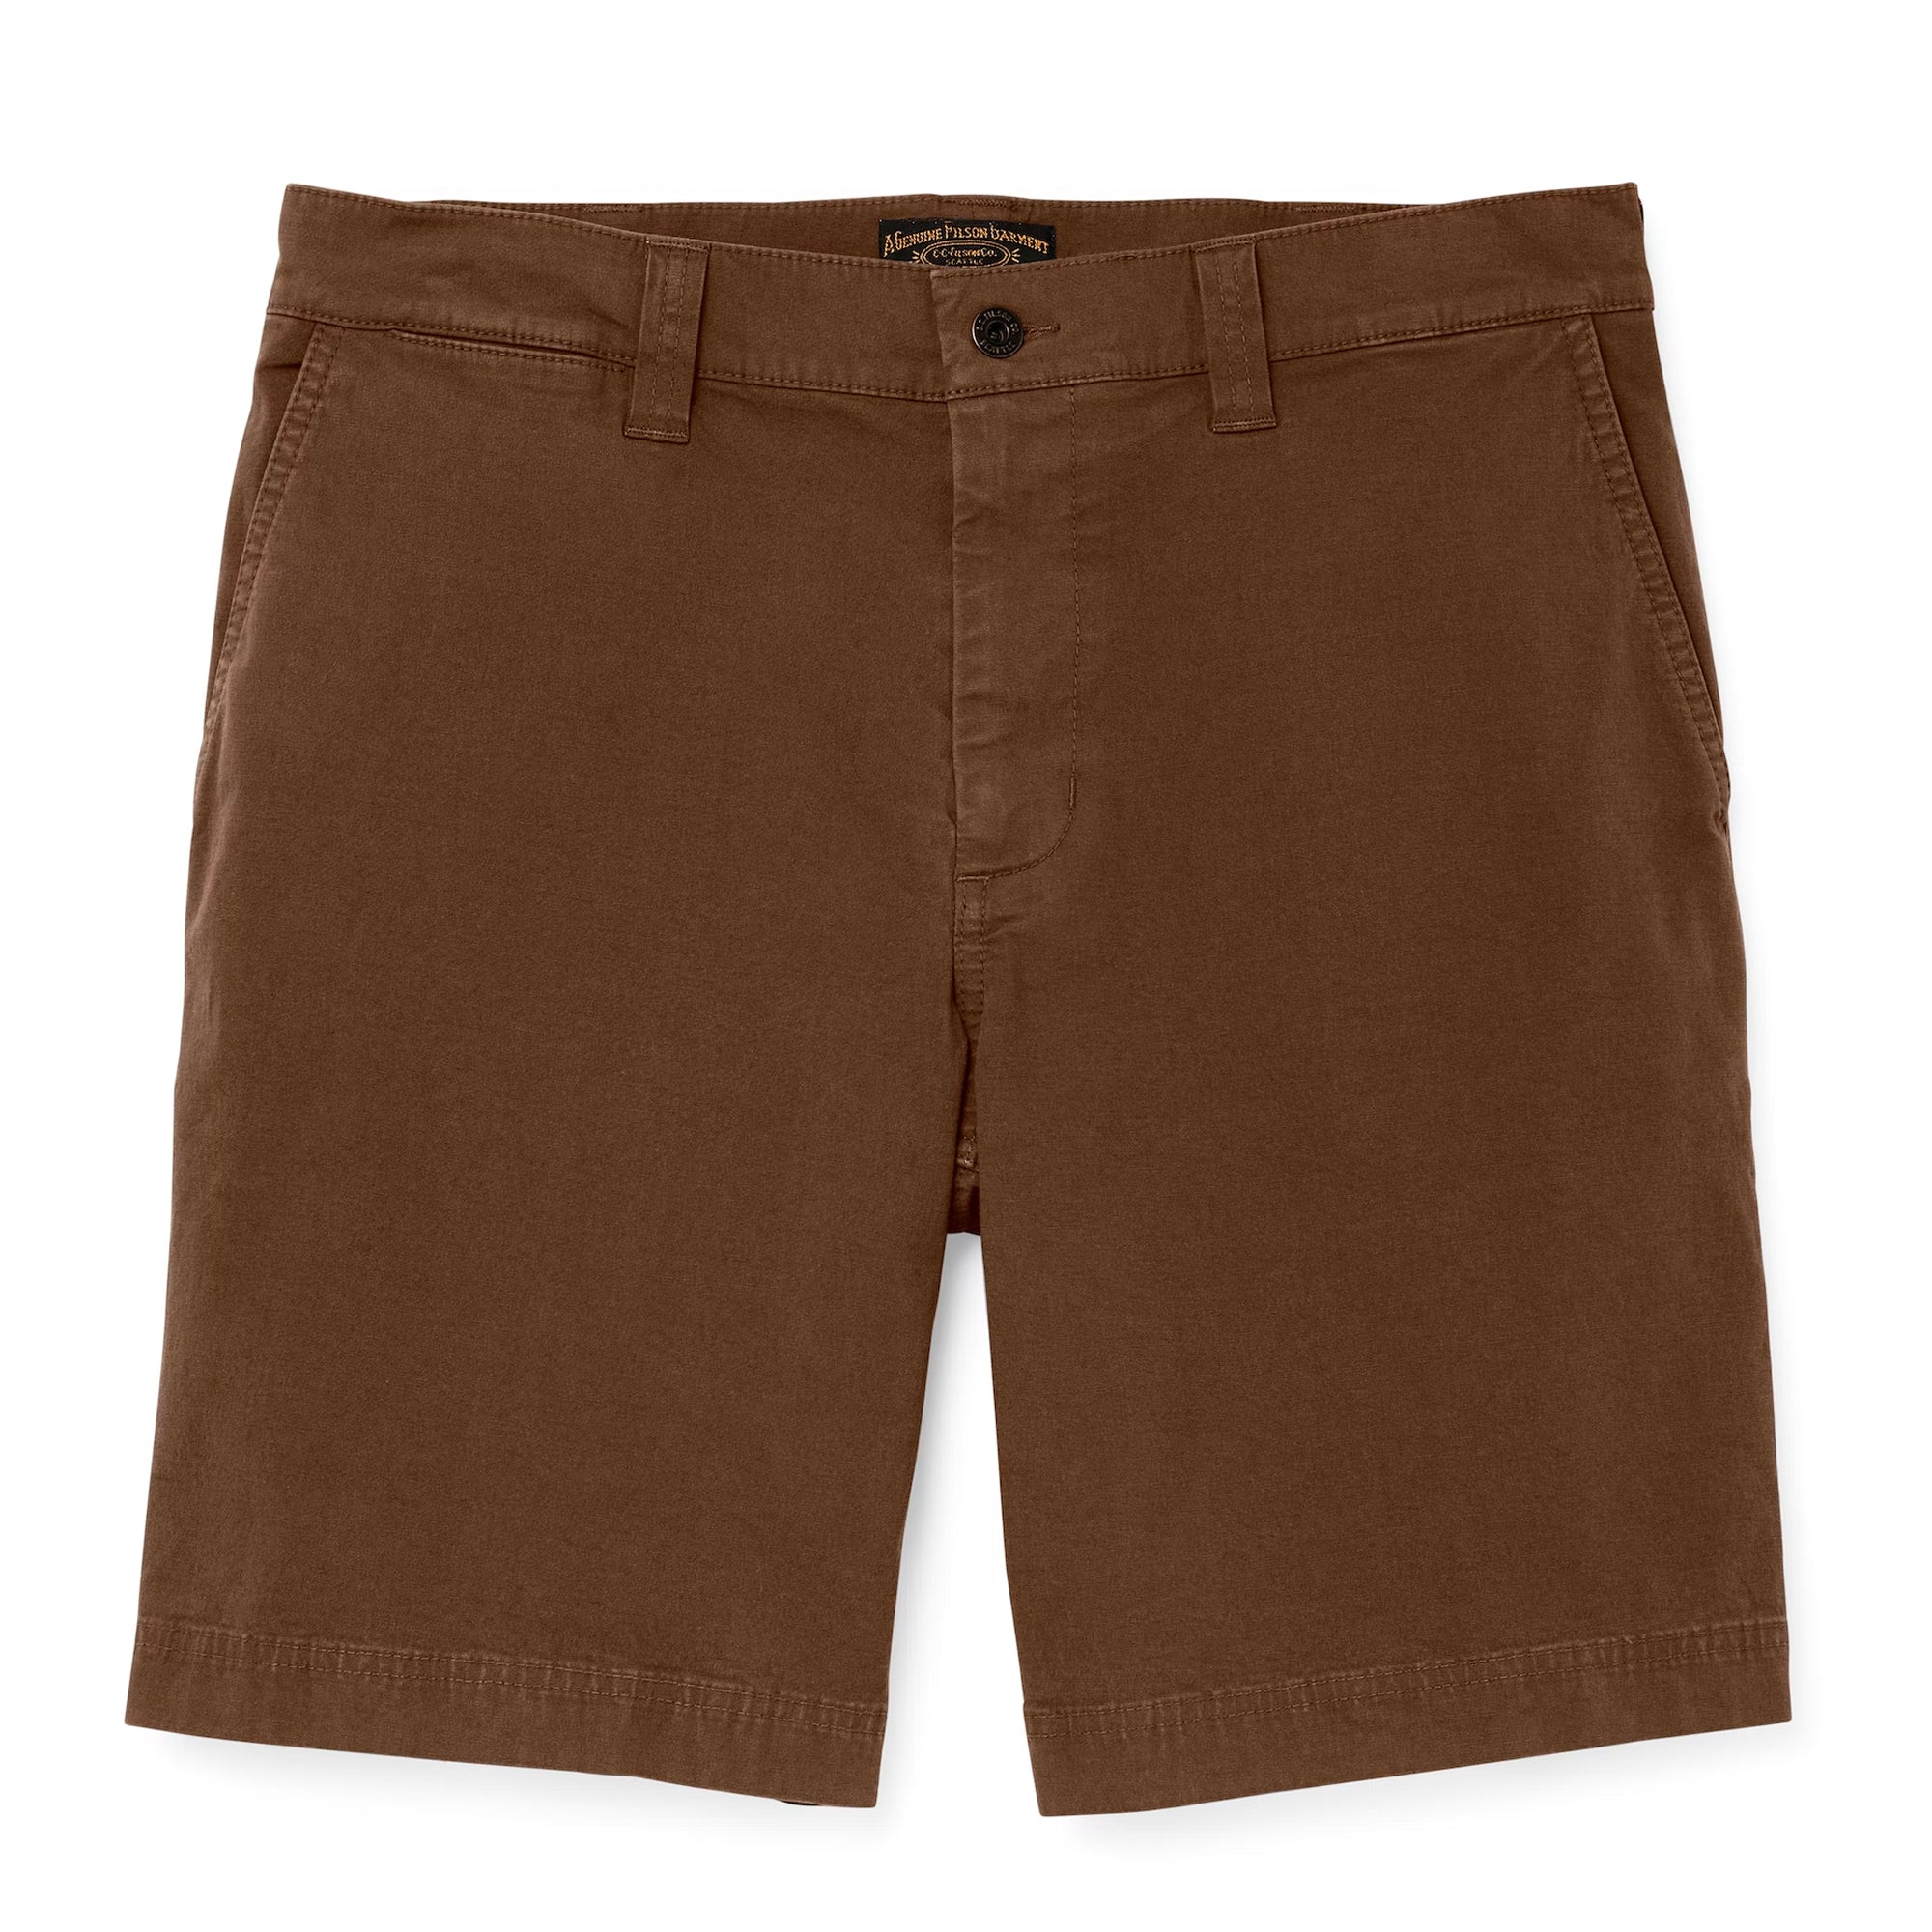 Filson Granite Mountain 9" Shorts - Mud Brown